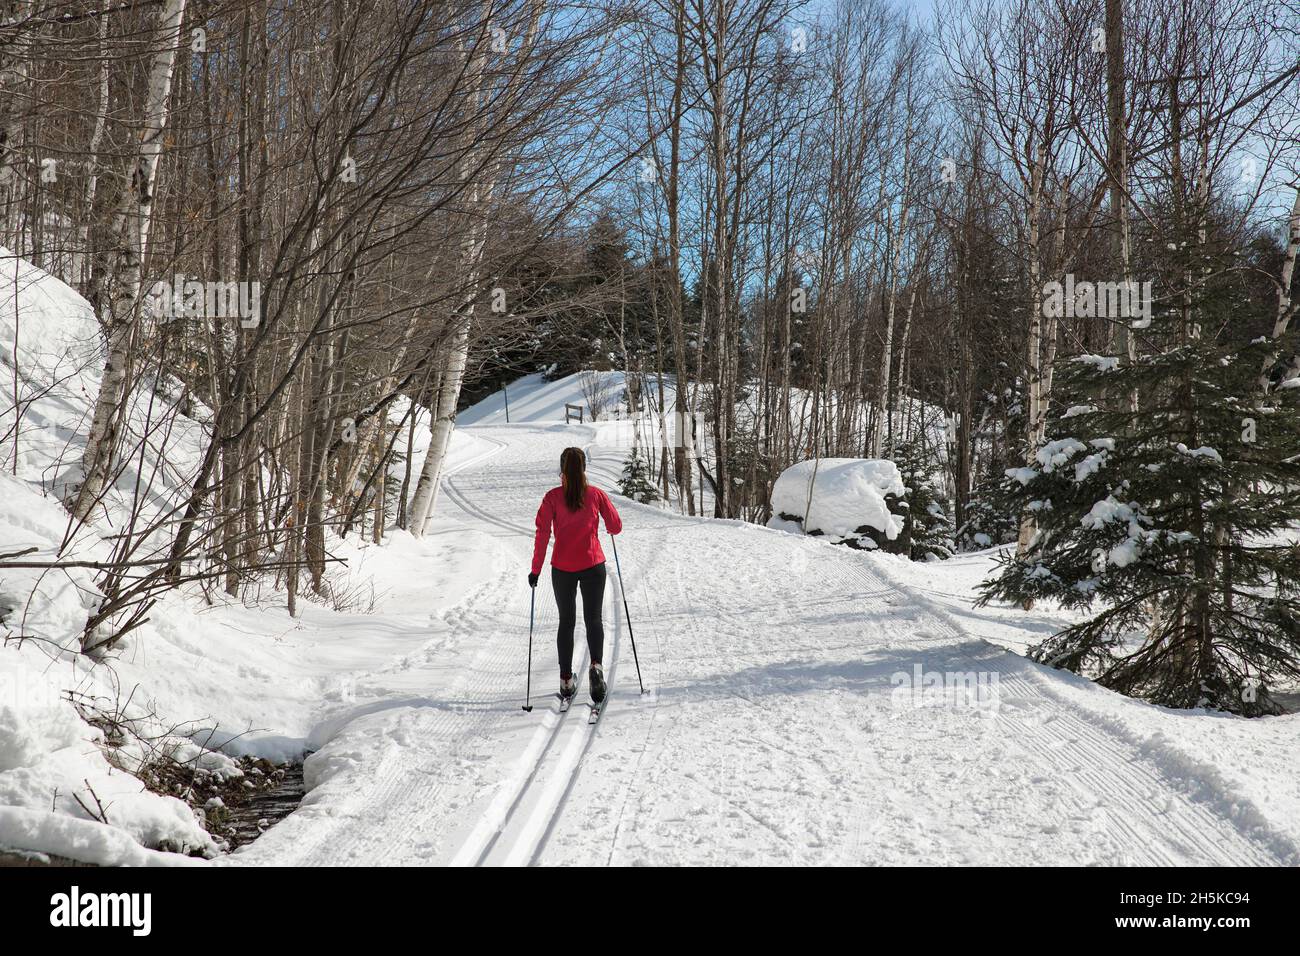 Ski de fond ski nordique classique en forêt.Femme en hiver faisant des activités sportives d'hiver amusantes dans la neige sur le ski de fond à Banque D'Images